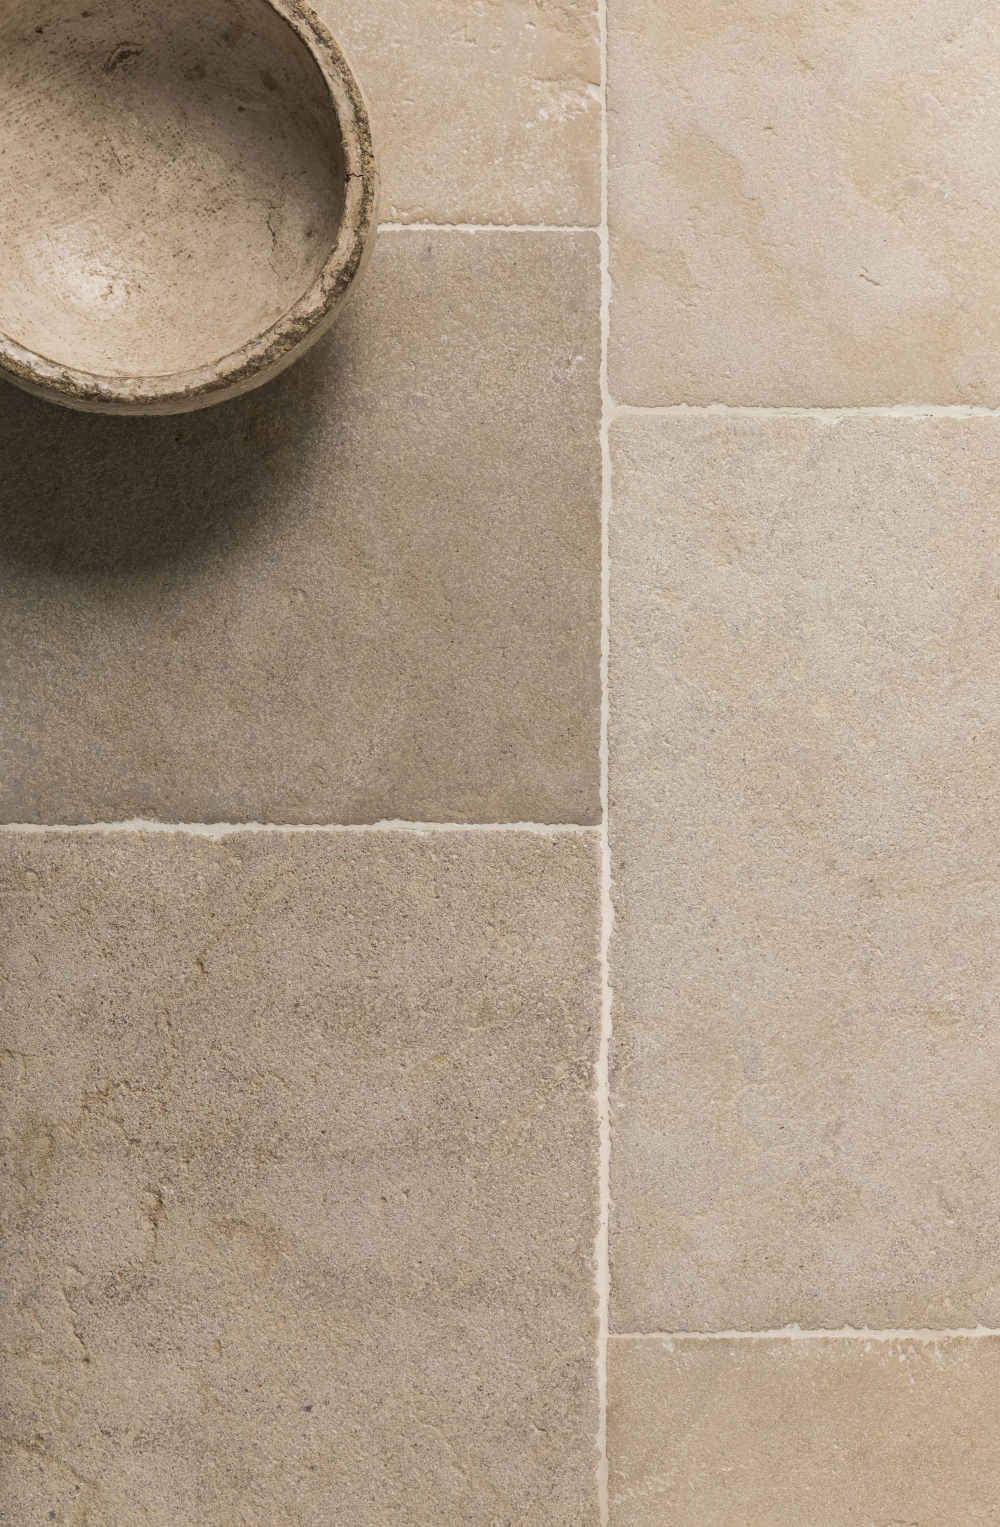 Creative Bathroom Floor Tile Ideas for Your Home Décor